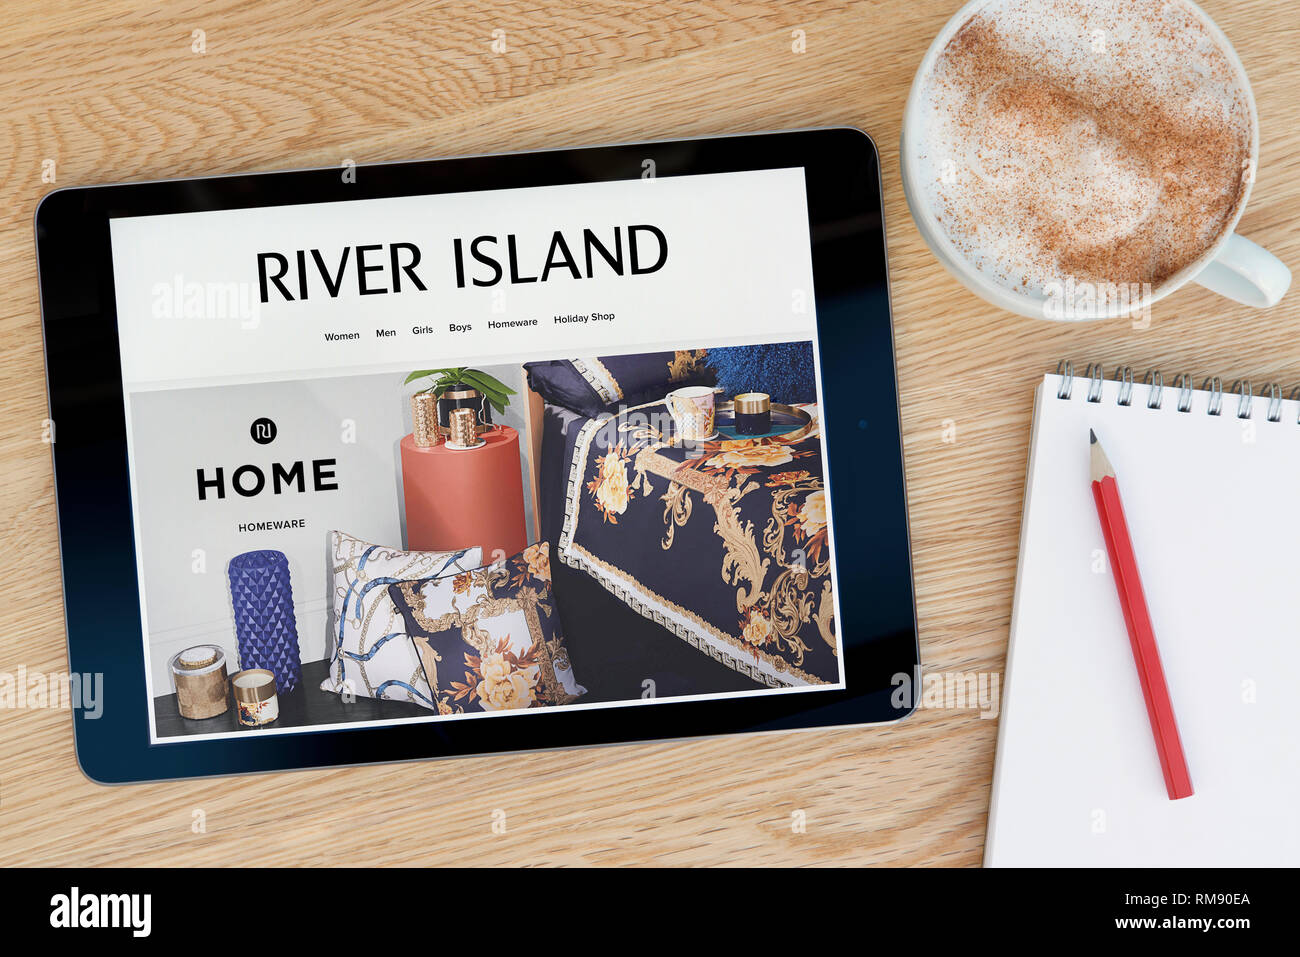 Die River Island website Funktionen auf einem iPad Tablet Gerät, das auf einem Tisch liegt neben einem Notizblock (nur redaktionelle Nutzung). Stockfoto